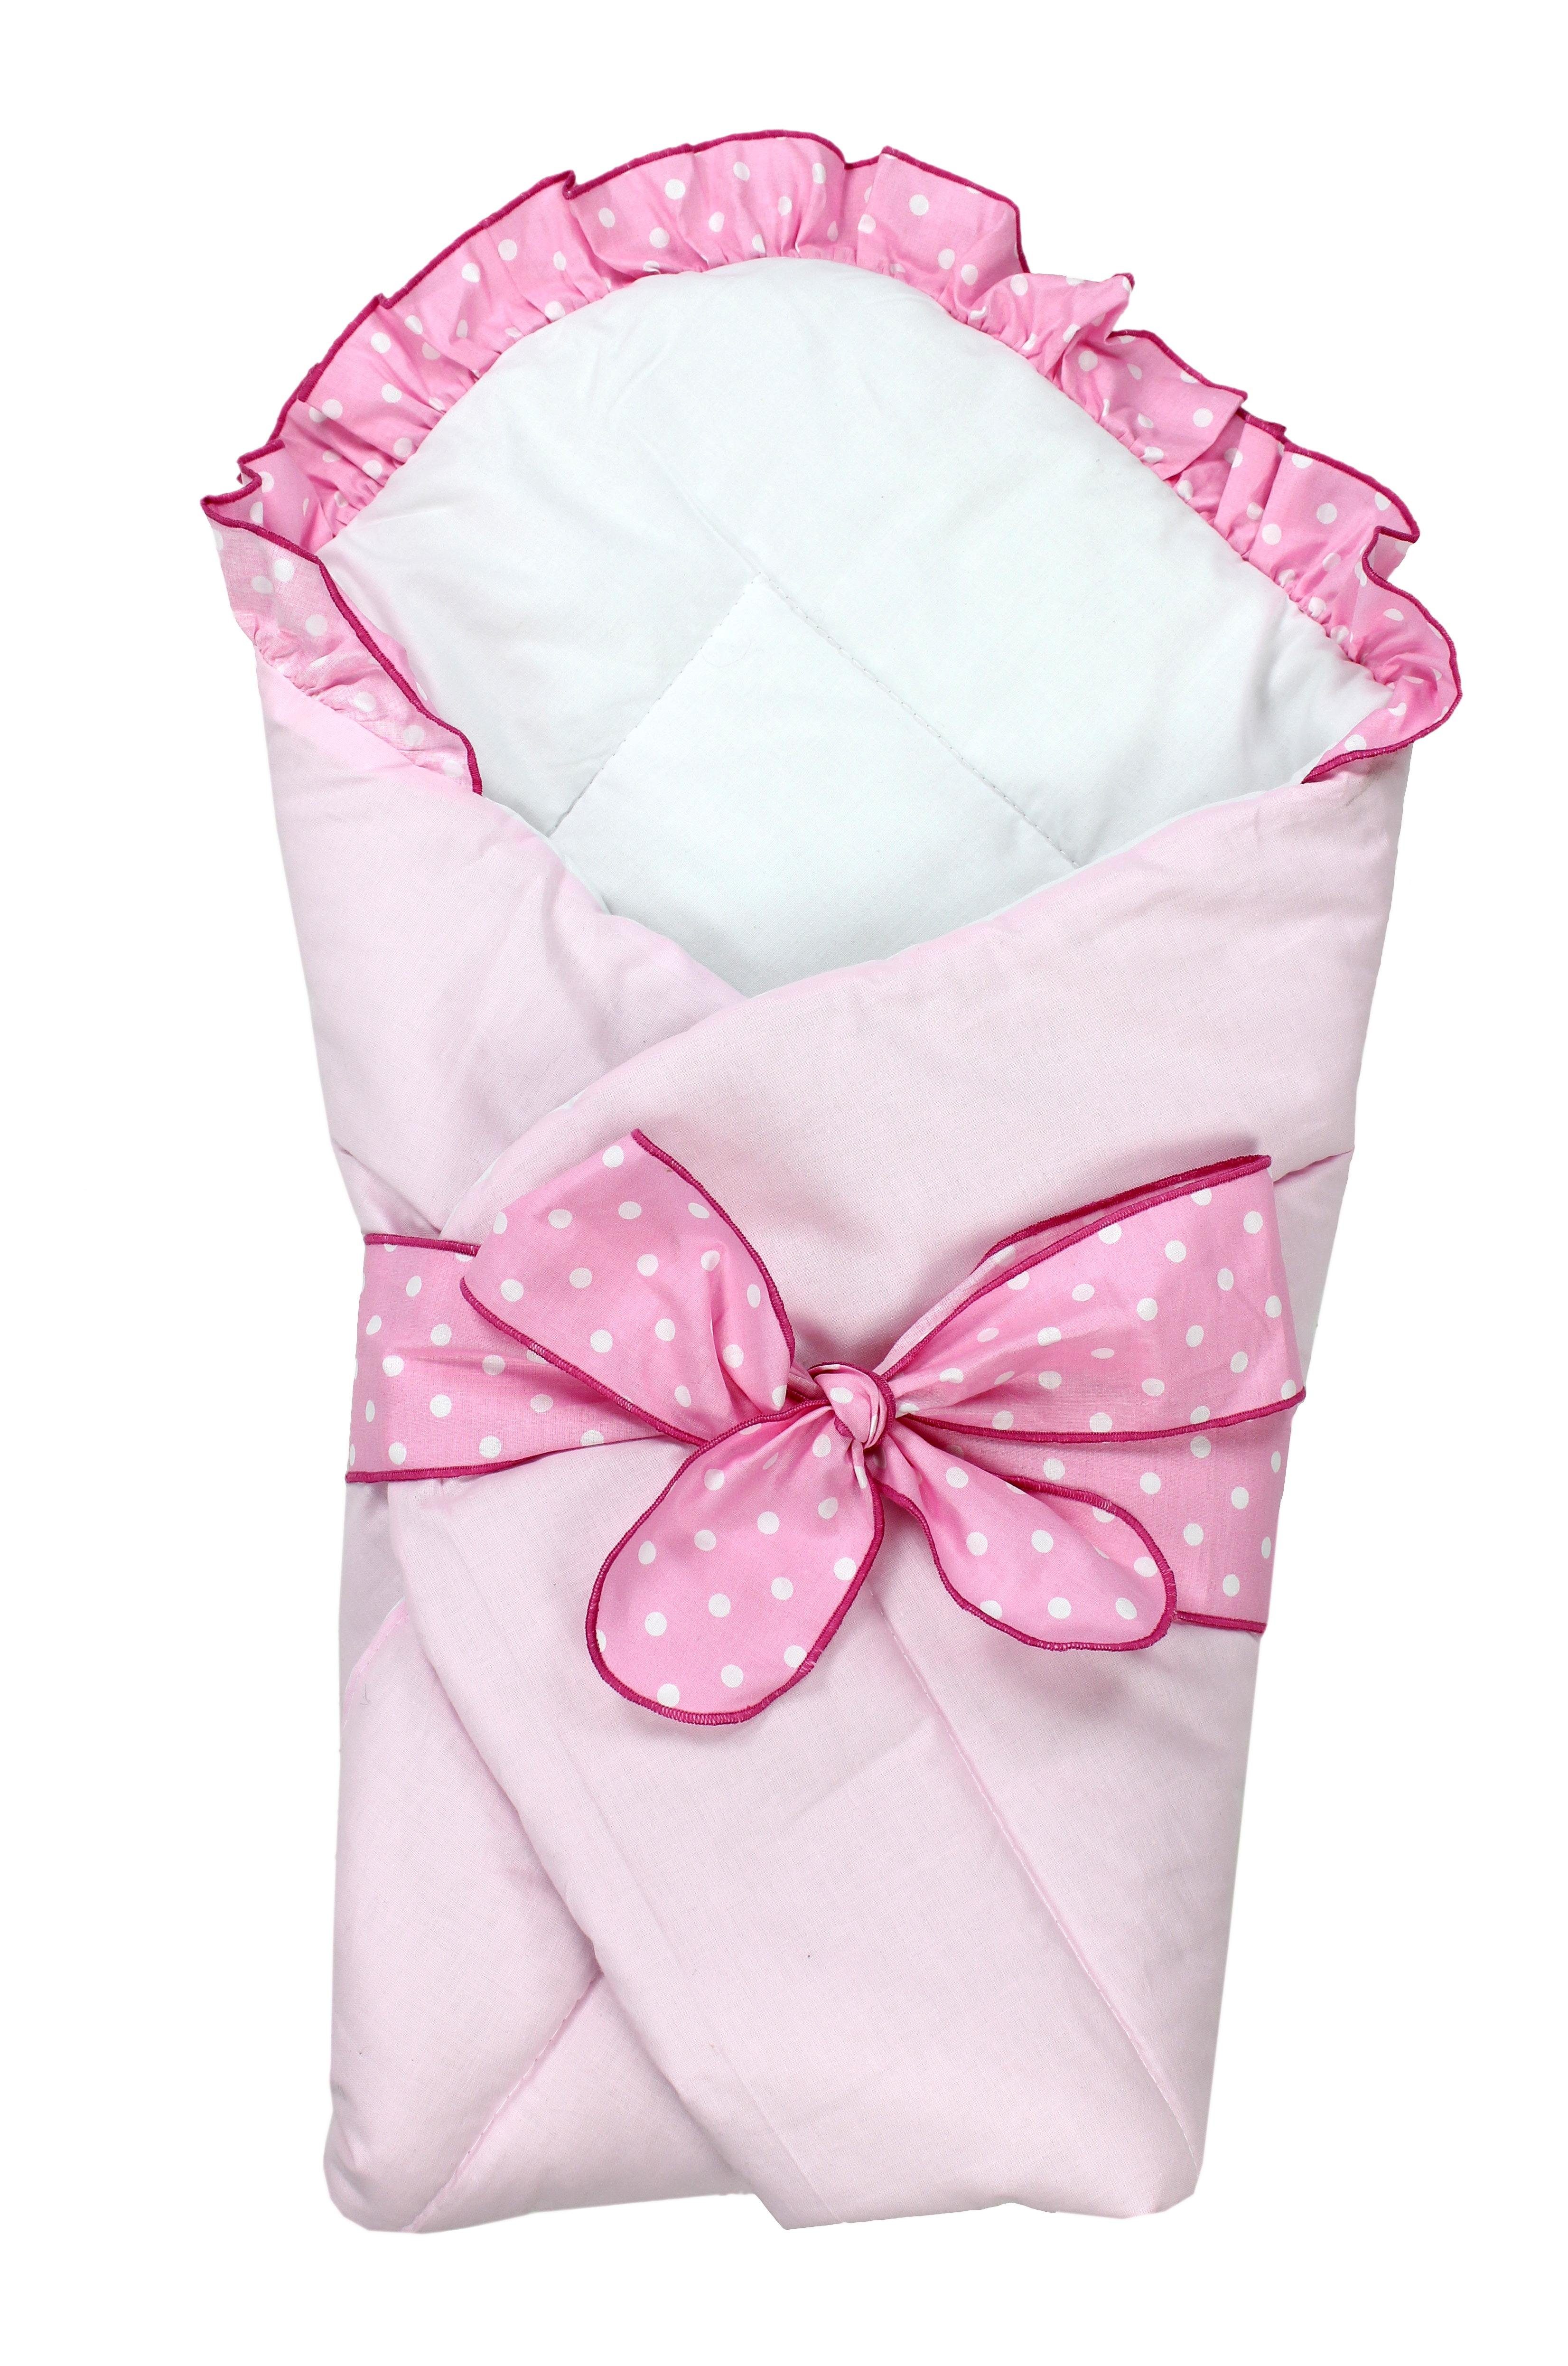 Einschlagdecke TupTam Unisex Baby Einschlagdecke mit Schleife, TupTam Rosa | Einschlagdecken